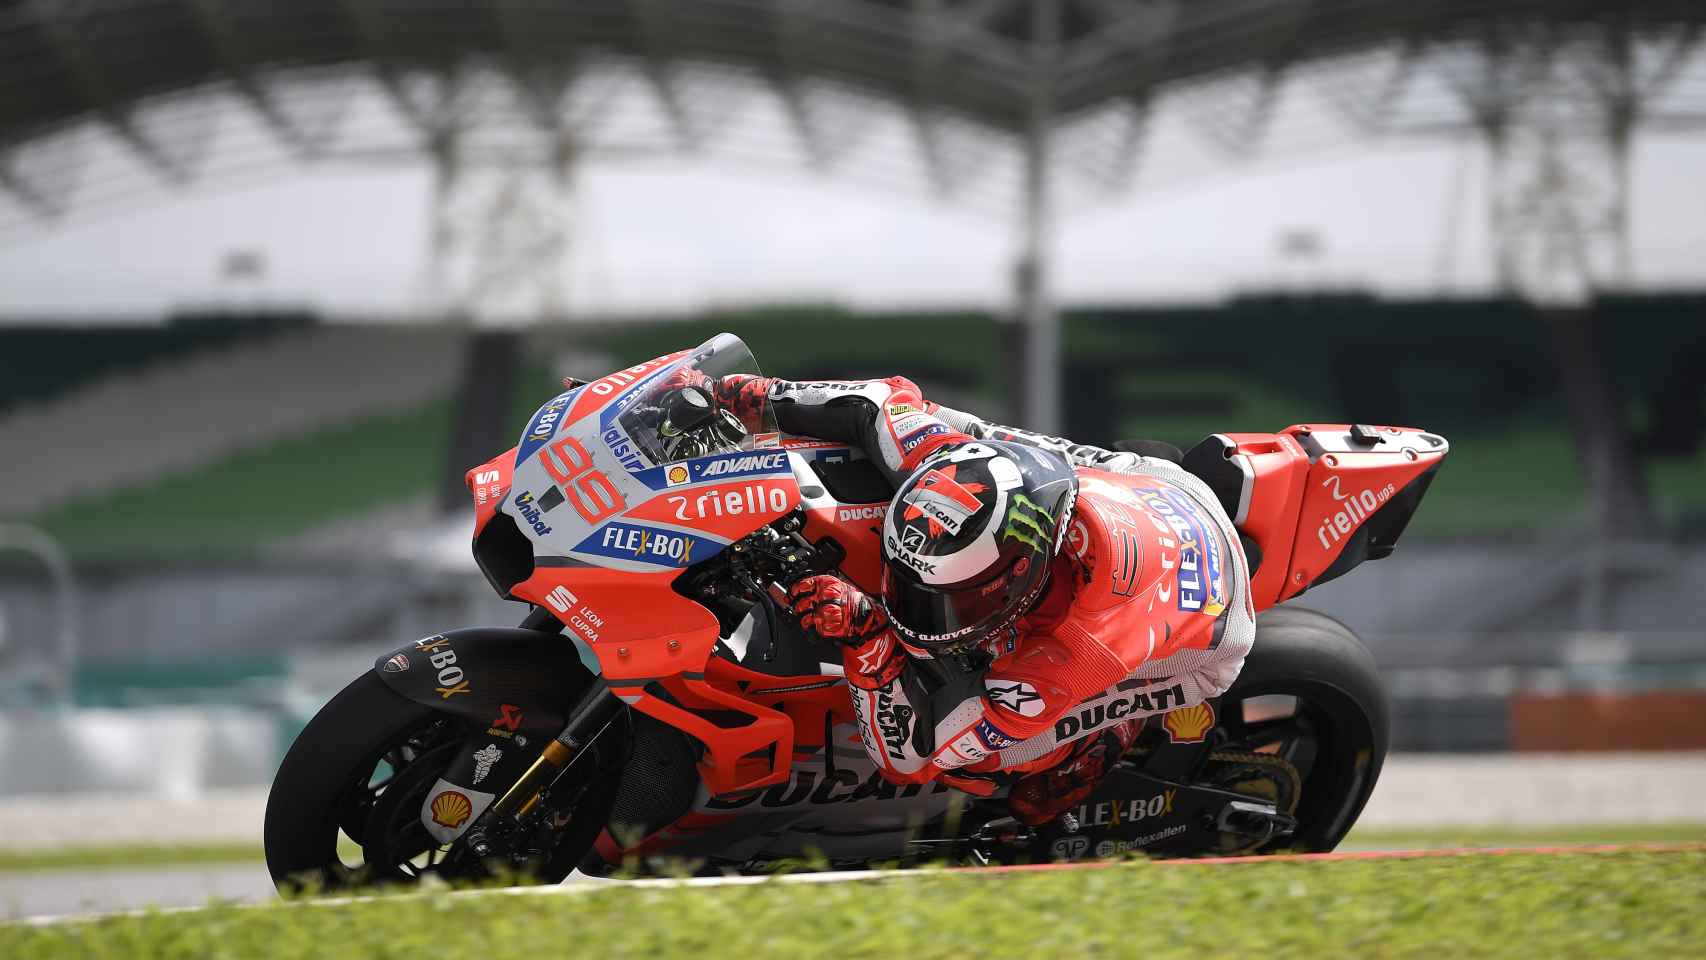 El piloto de Ducati traza un viraje, en los test de pretemporada en el circuito de Sepang.